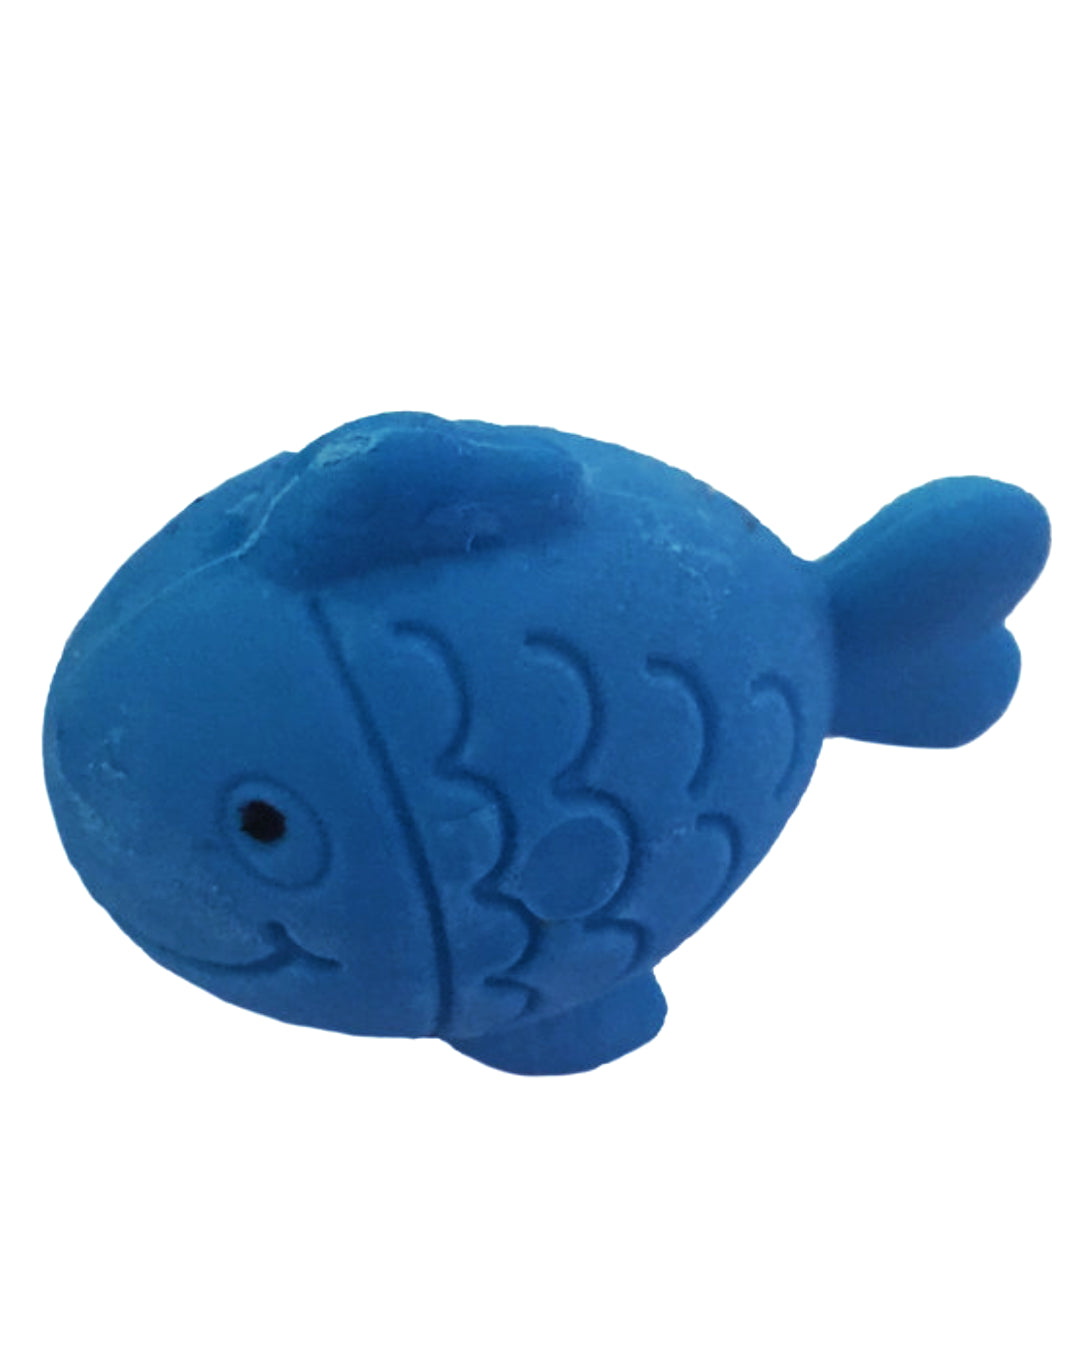 Blauer Radierer in Fisch Form